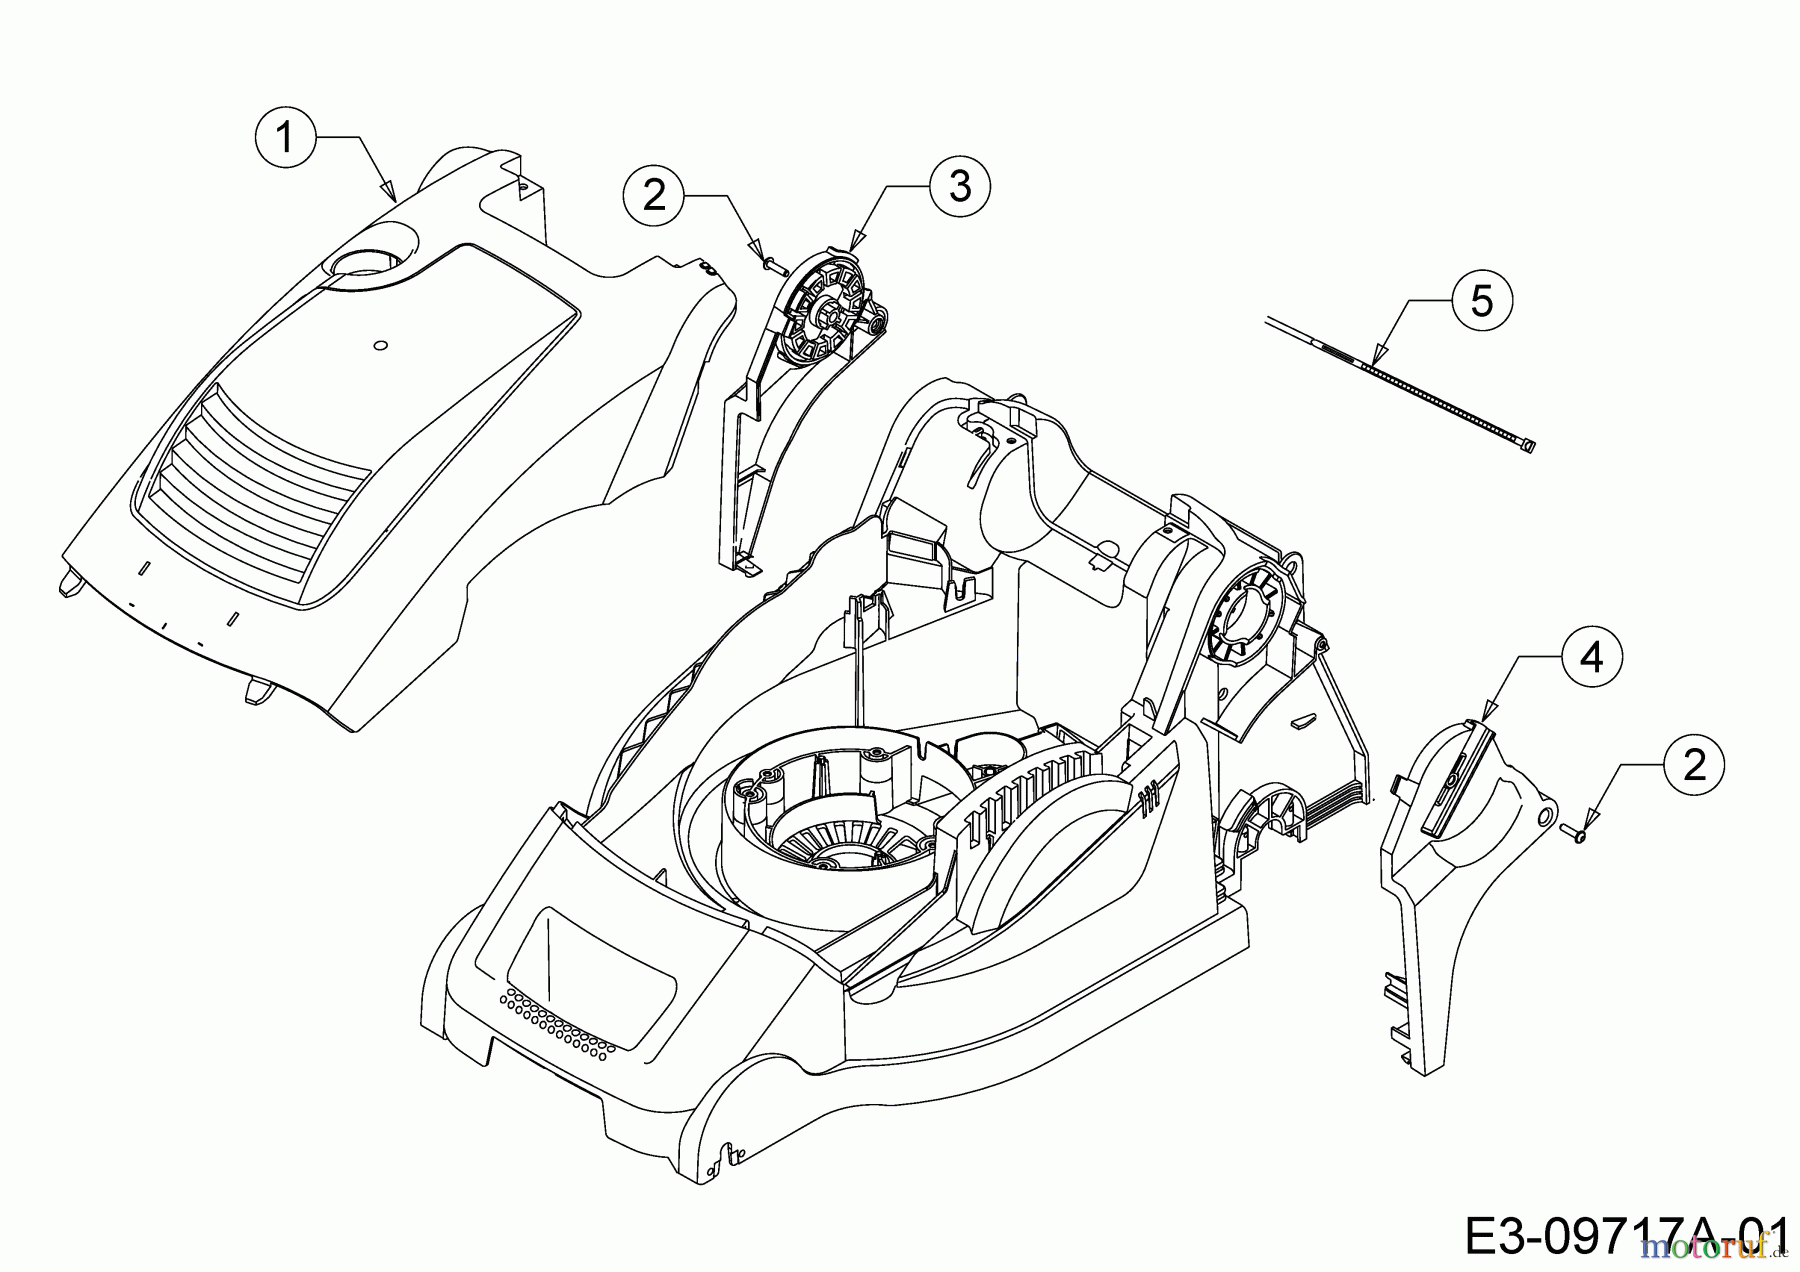  Wolf-Garten Elektromäher mit Antrieb A 400 EA 18CRMLM1650  (2020) Abdeckung seitlich, Motorhaube